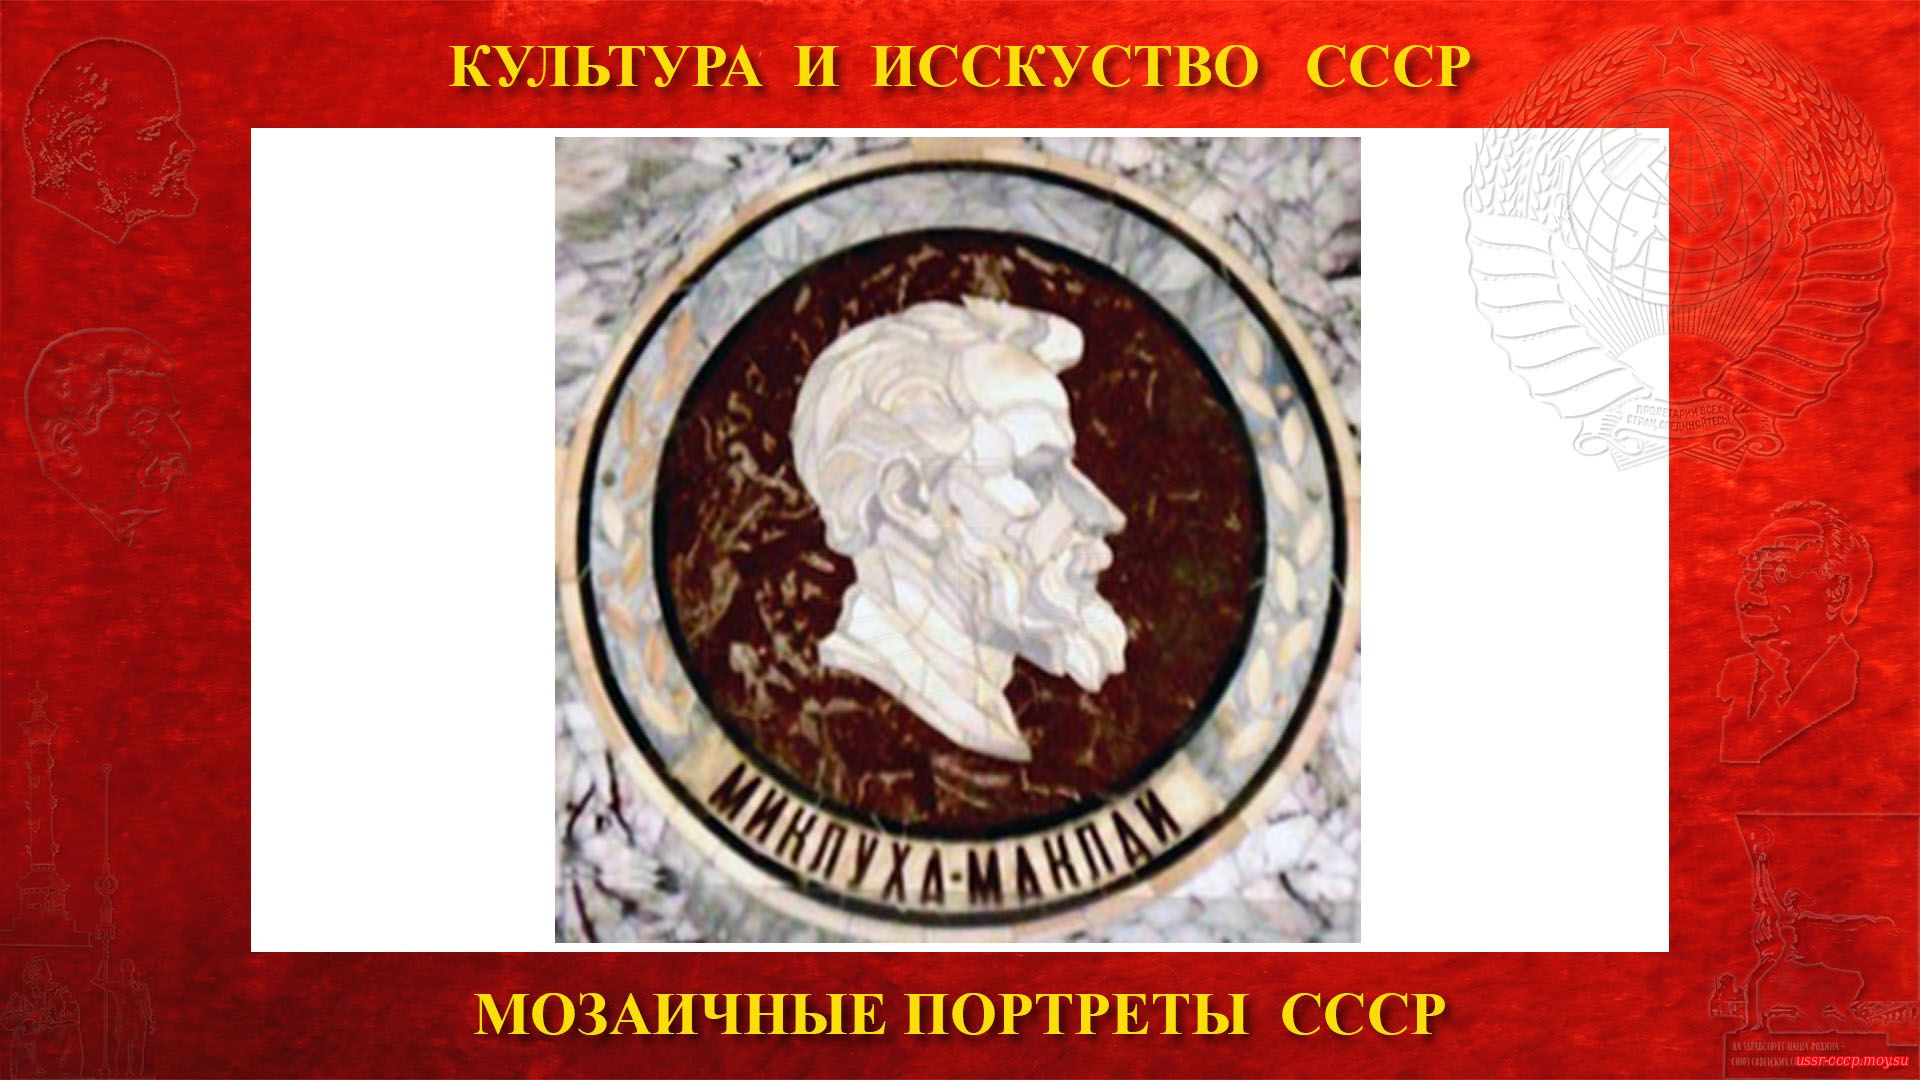 Мозаичный портрет Миклухо-Маклаю Н.Н. на Ленинских горах в ГЗ МГУ (Москва 1953) (повествование)